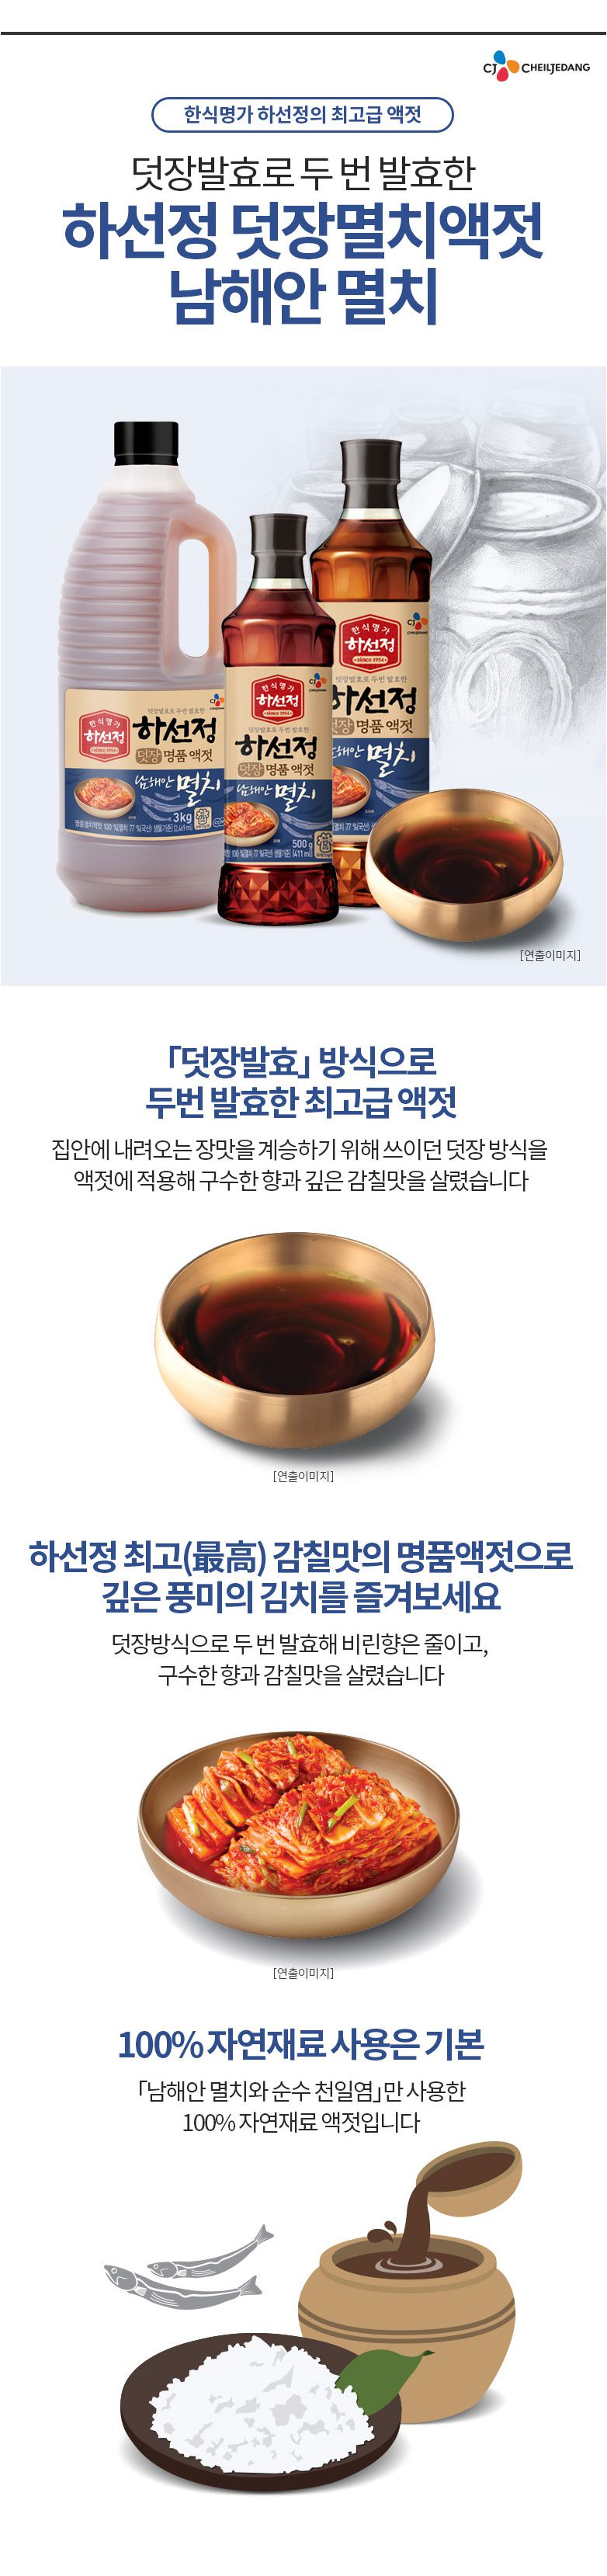 韓國食品-[CJ] 하선정멸치액젓 500g